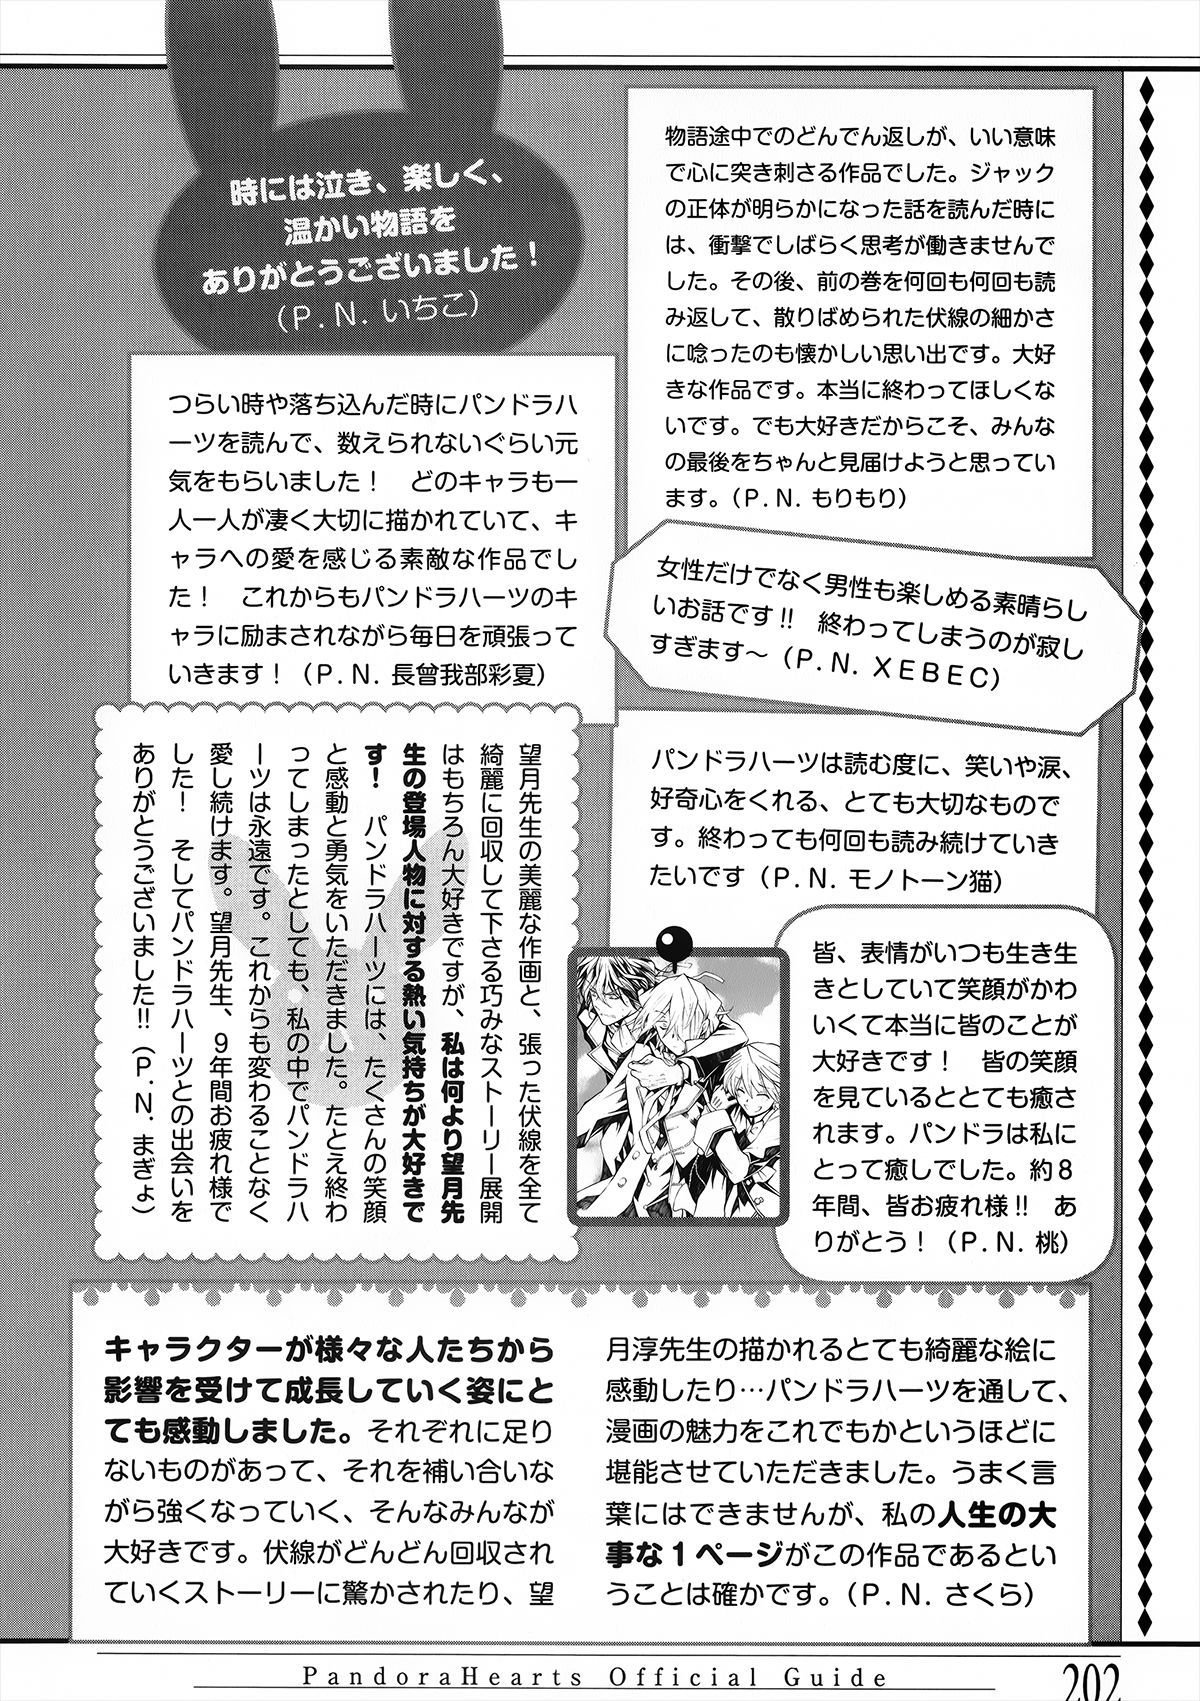 Pandora Hearts Guidebook 24+1: Last Dance パンドラハーツ オフィシャルガイド 24 + 1 ~Last Dance! 200